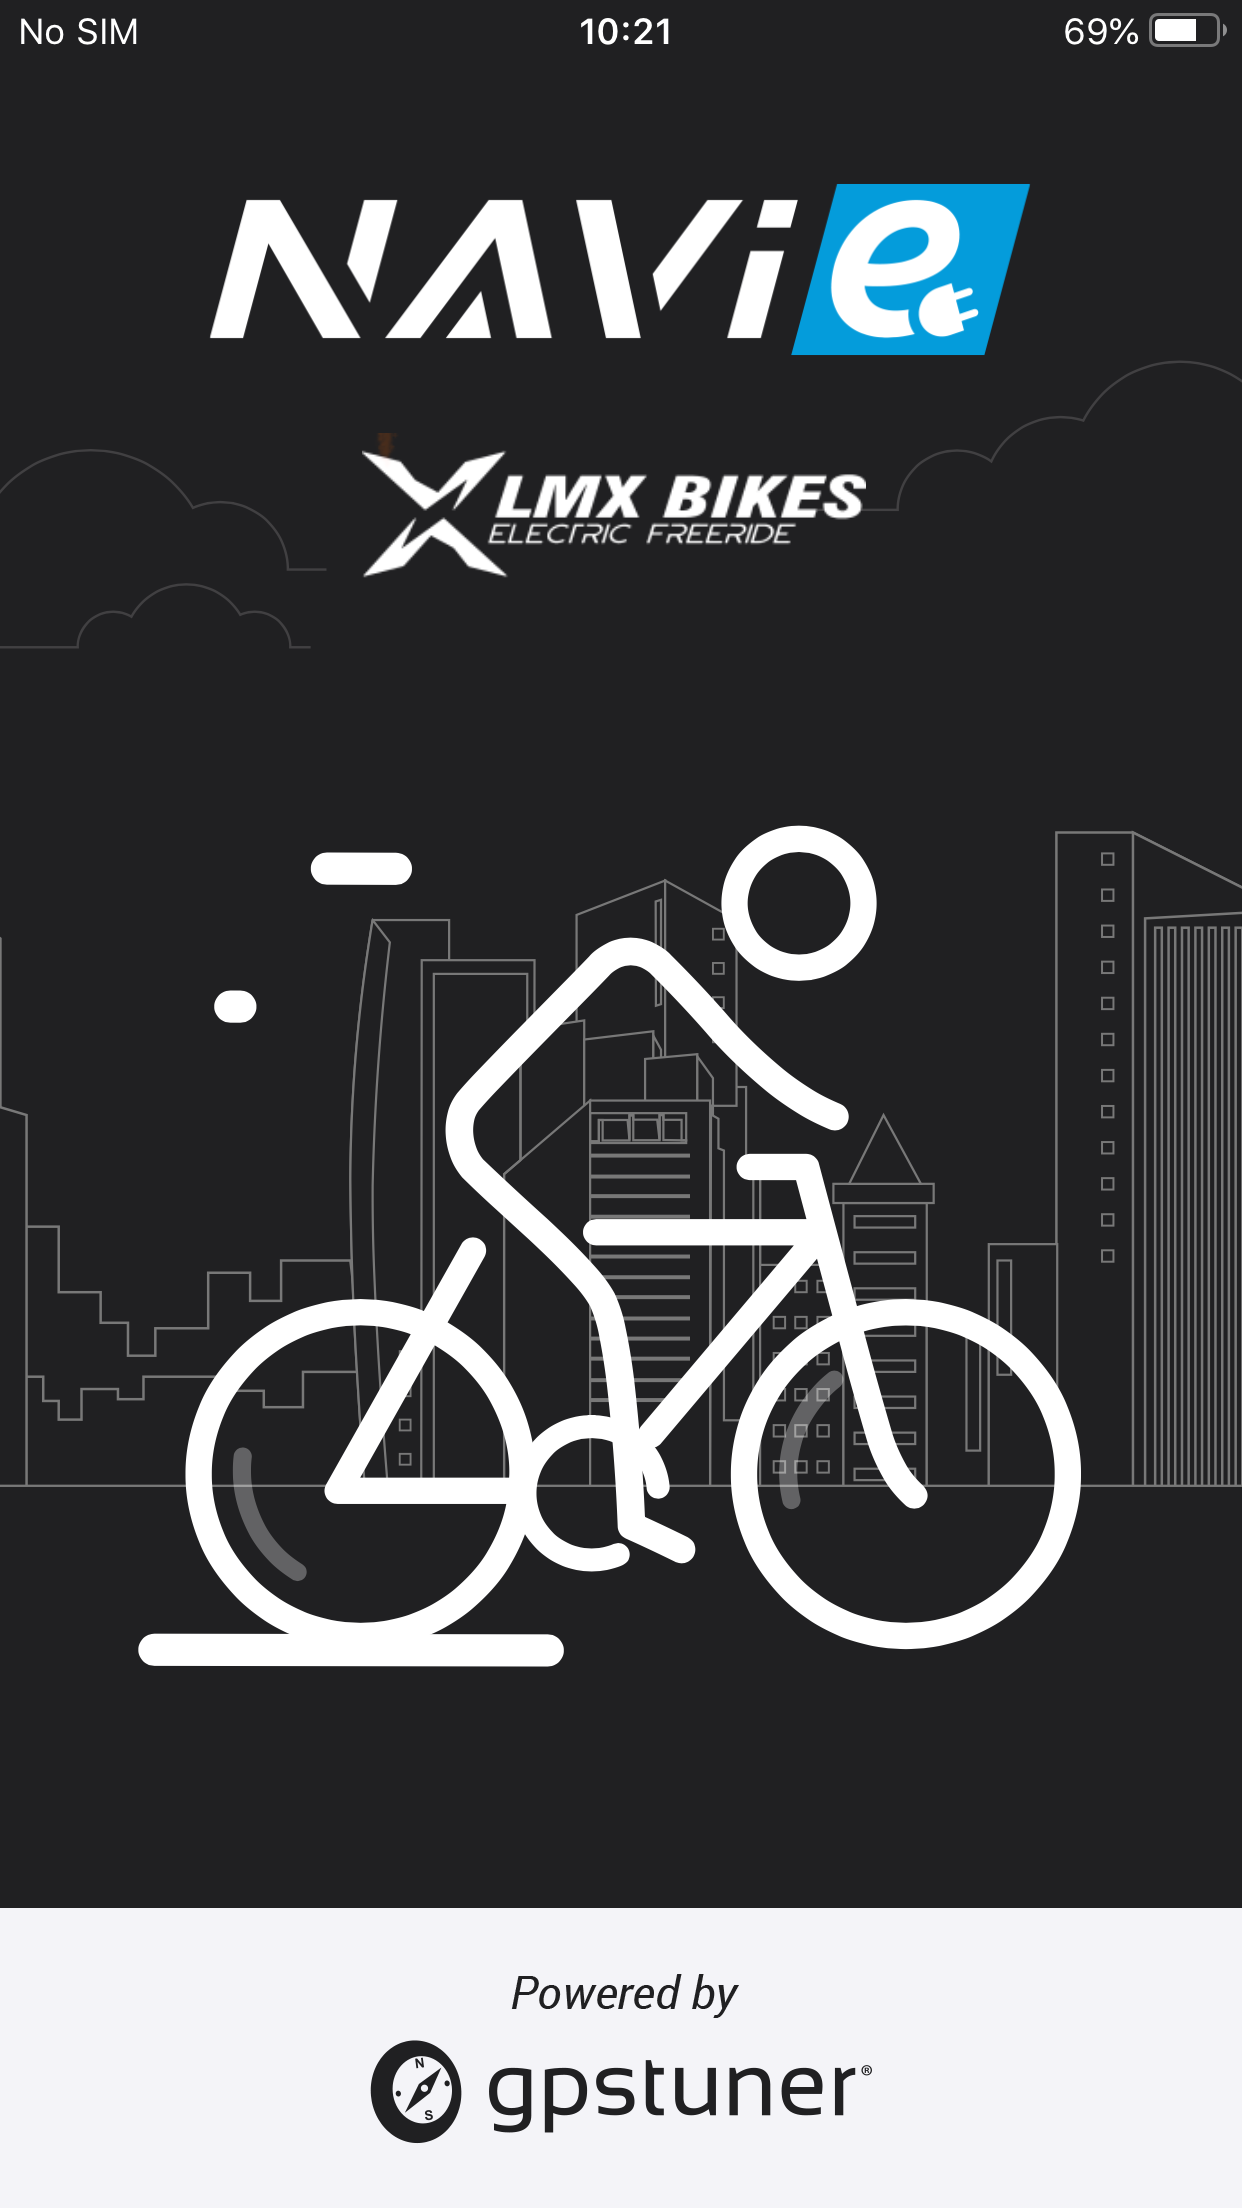 lmx bikes